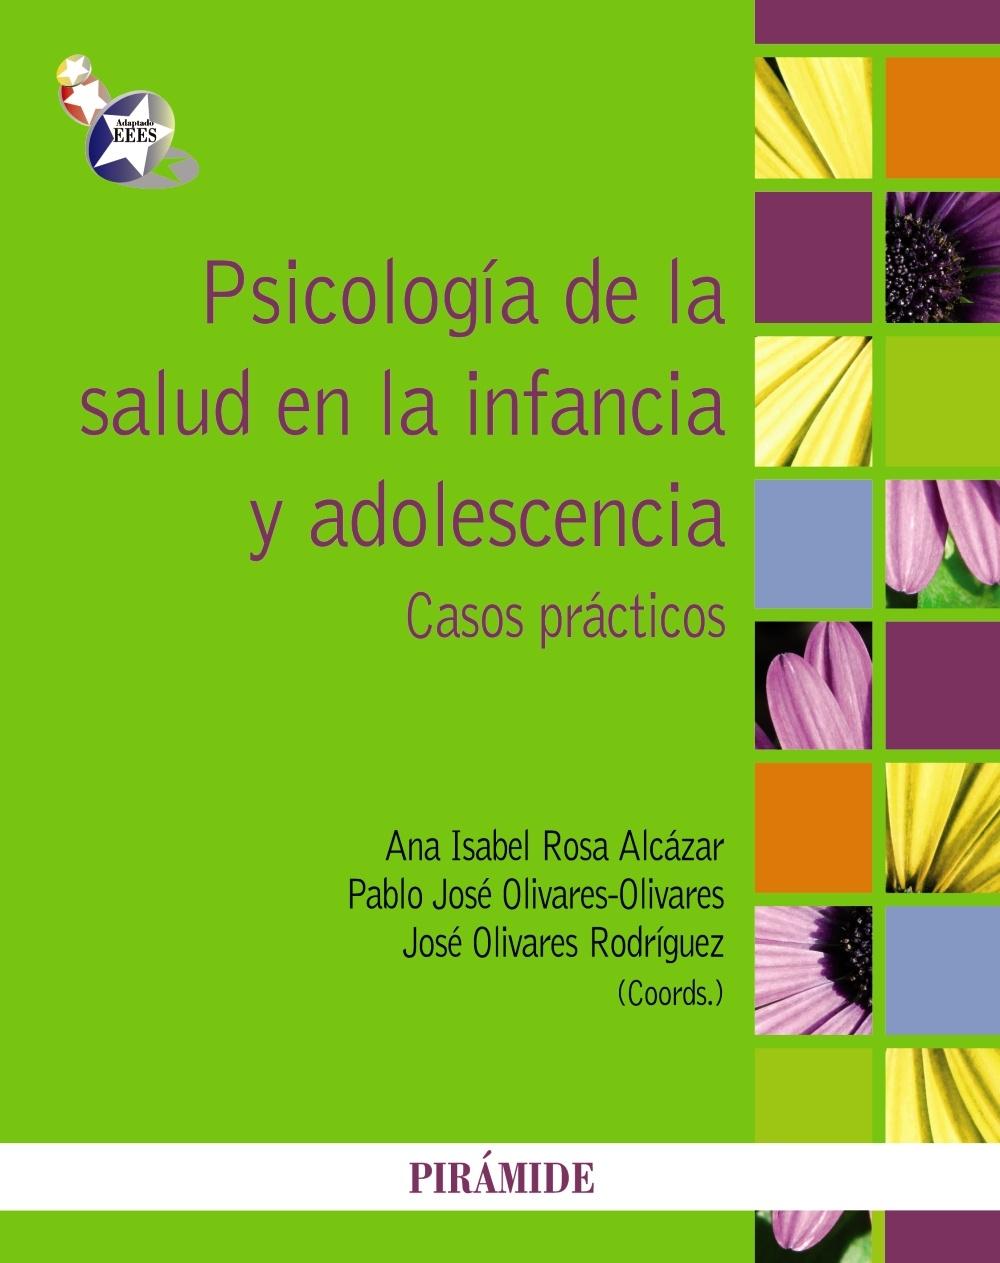 Psicología de la salud en la infancia y adolescencia "Casos prácticos". 